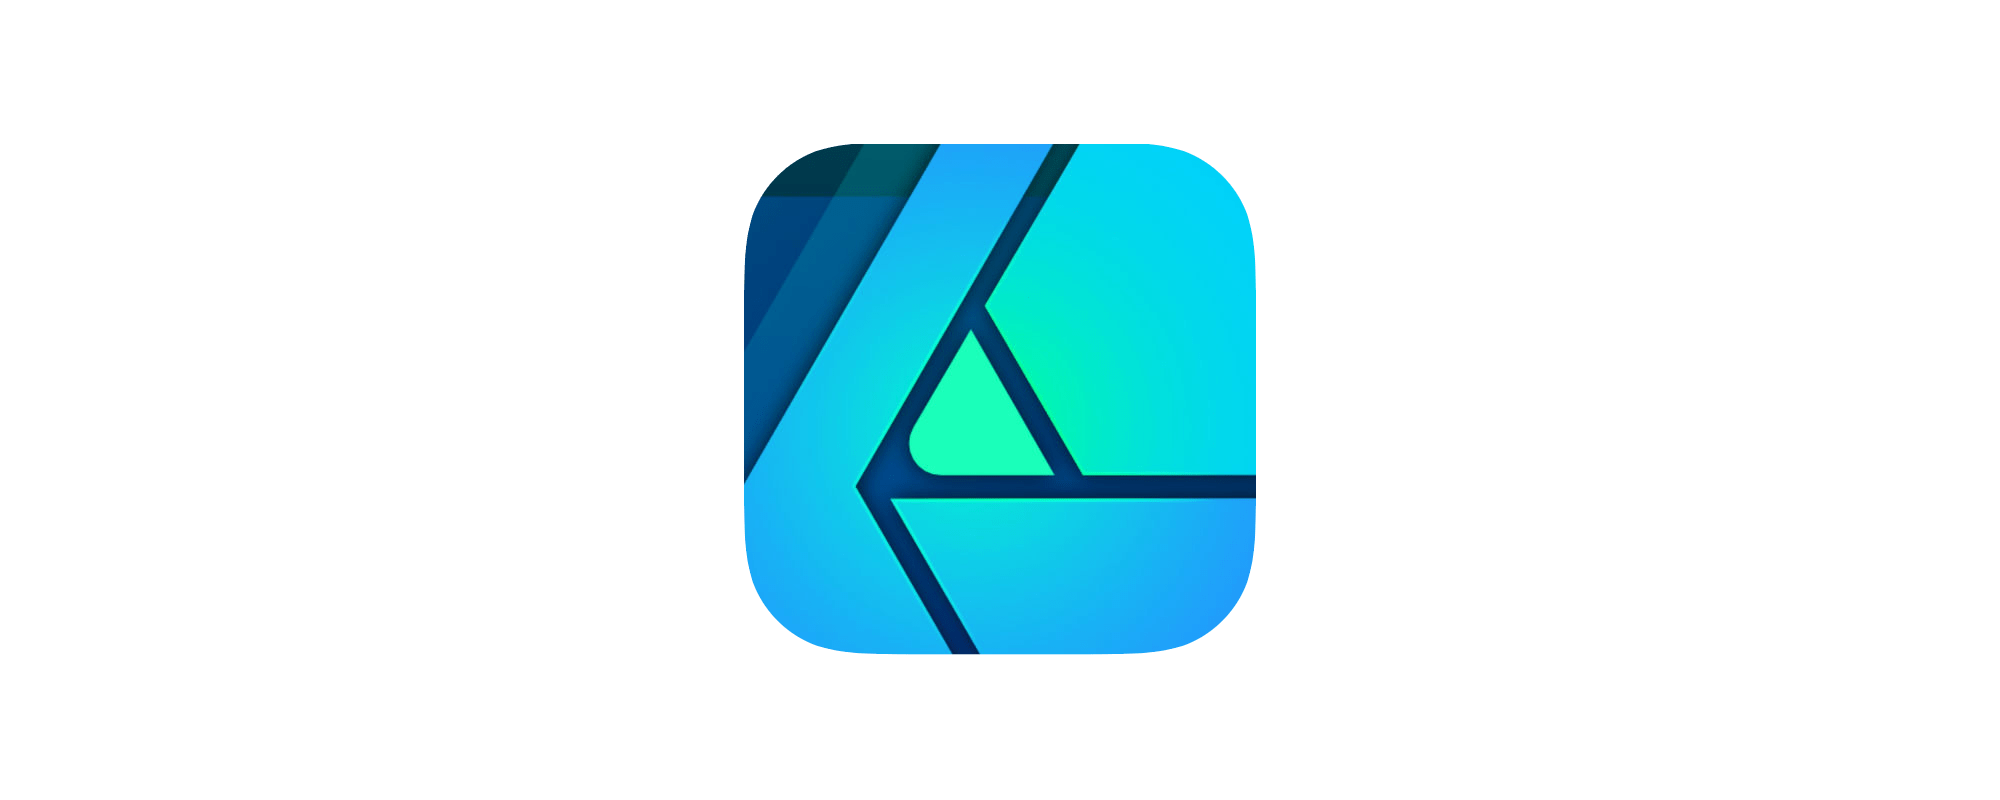 affinity designer mac ipad